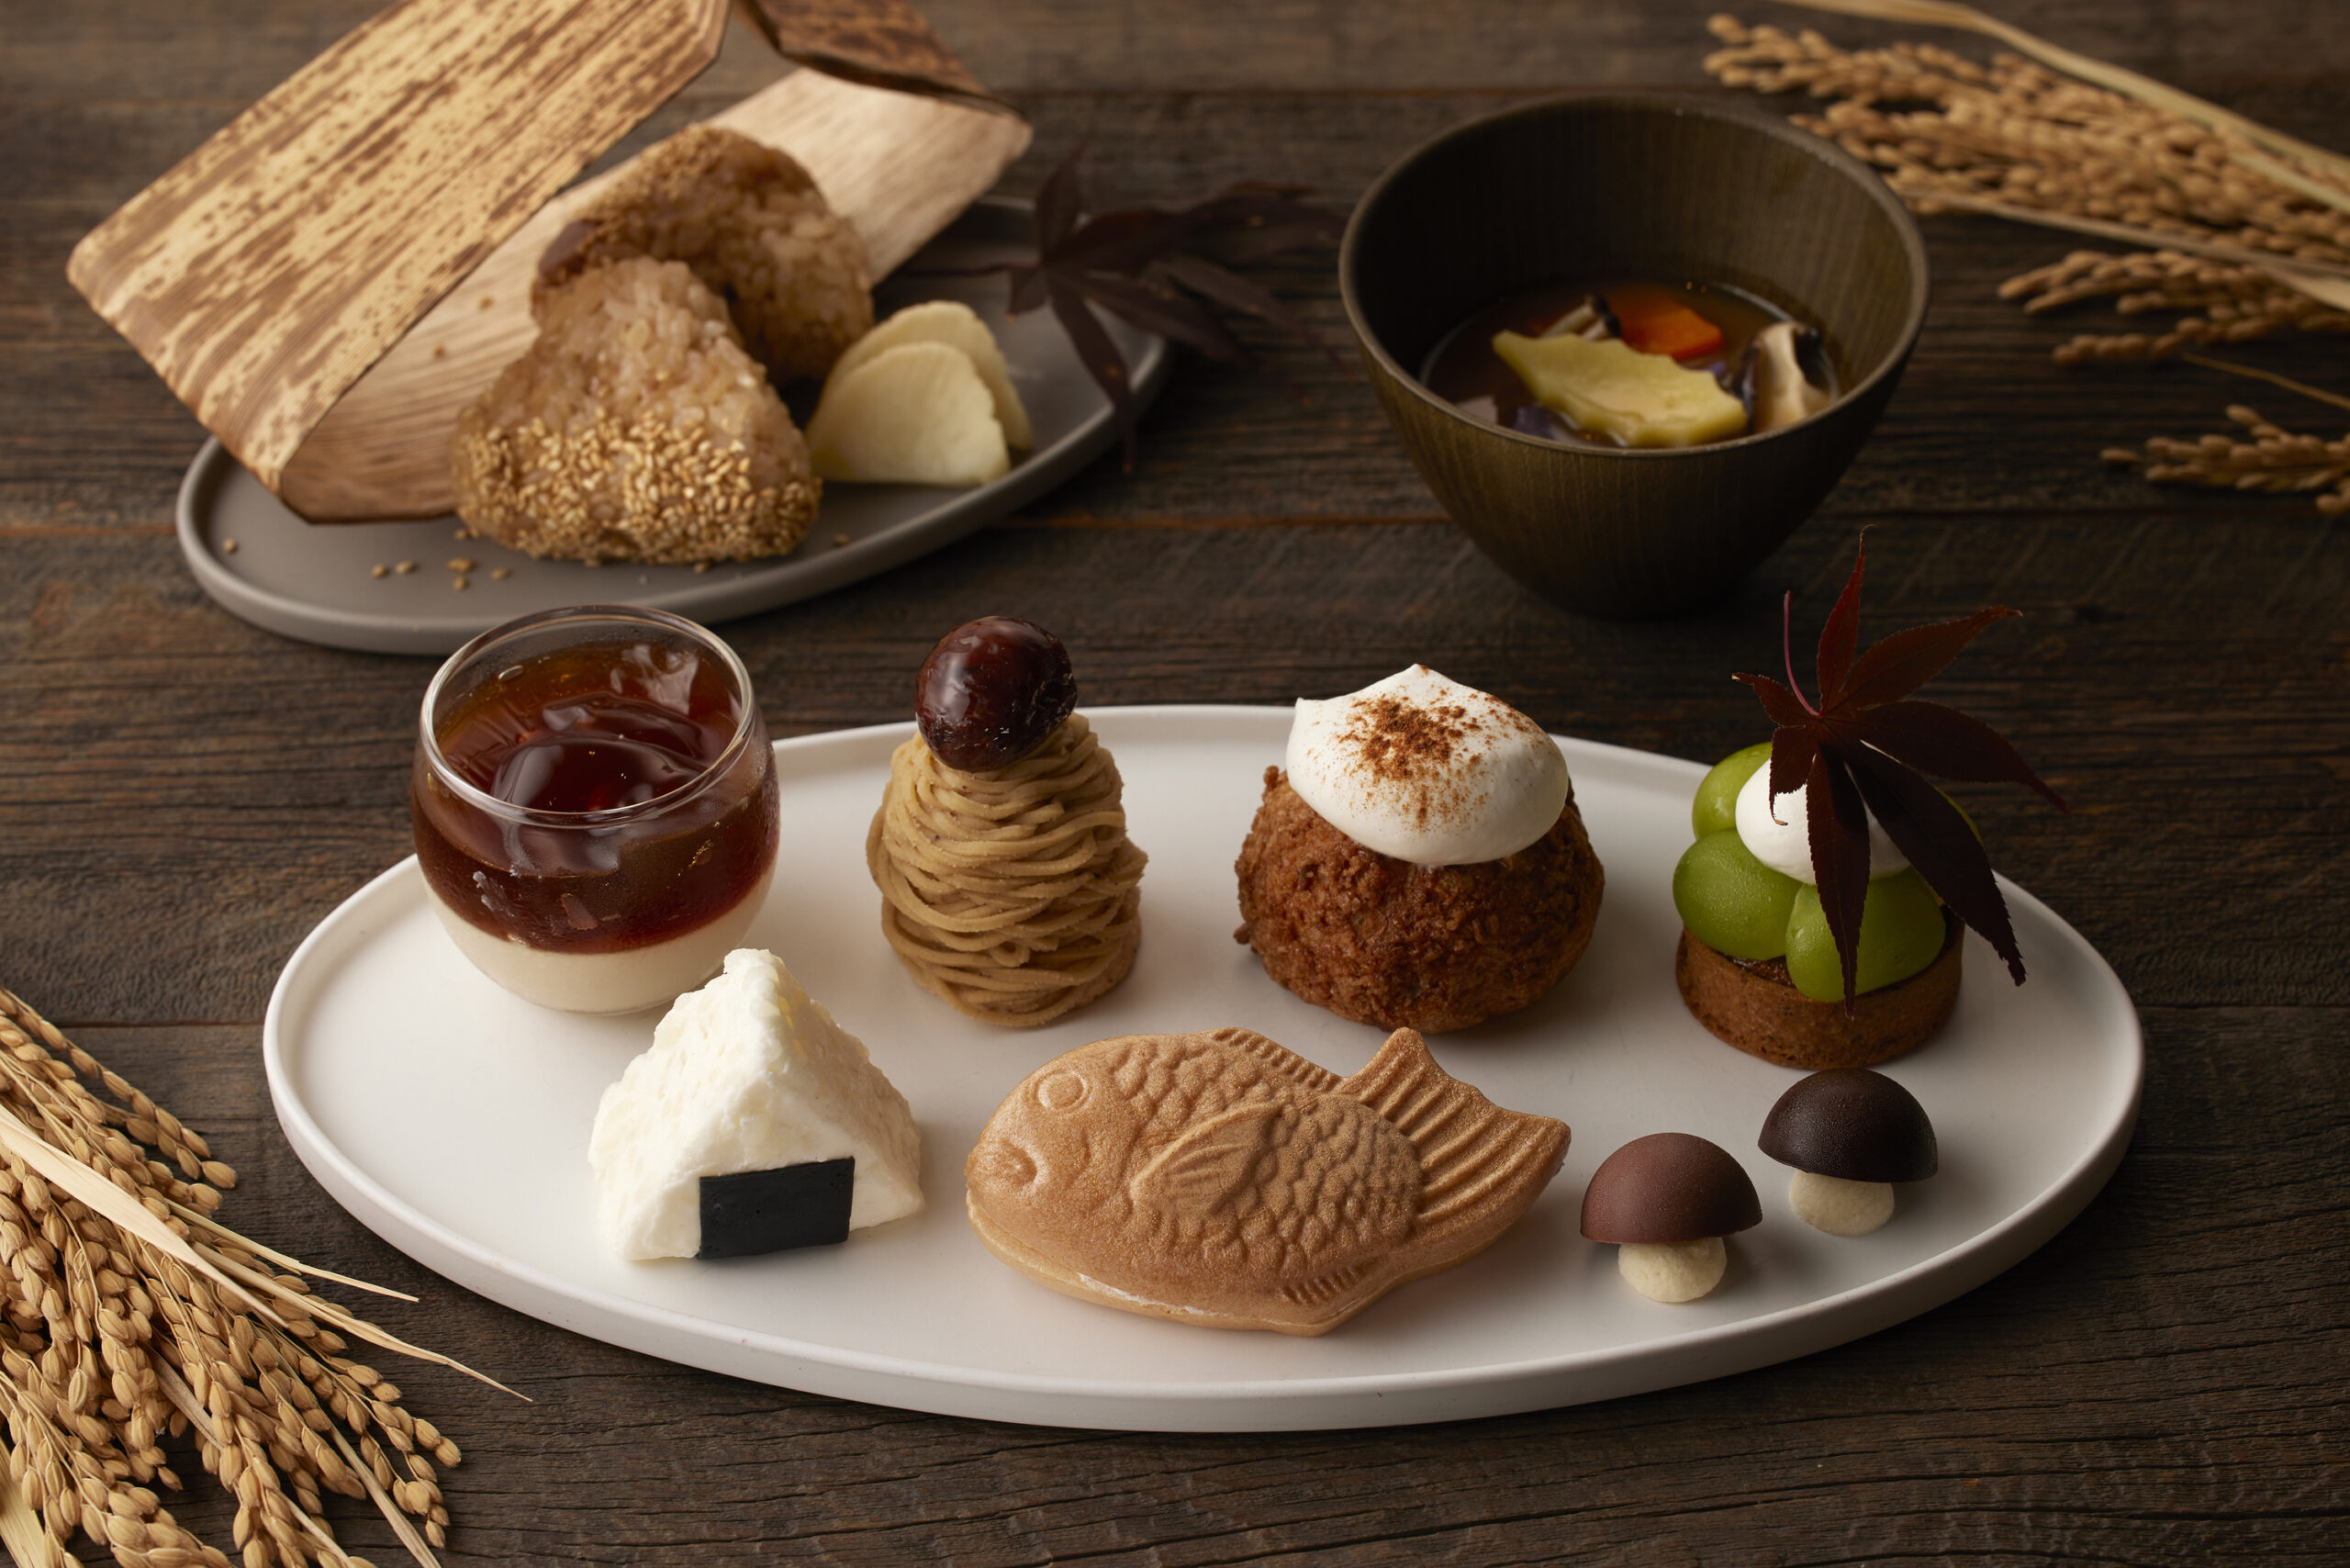 ホテル「ハイアット セントリック 銀座 東京」は9月1日〜9月30日、11月1日〜11月30日、秋のスイーツが味わえる「芋 栗 新米！秋のまんぷくアフタヌーンティー」」を提供する。